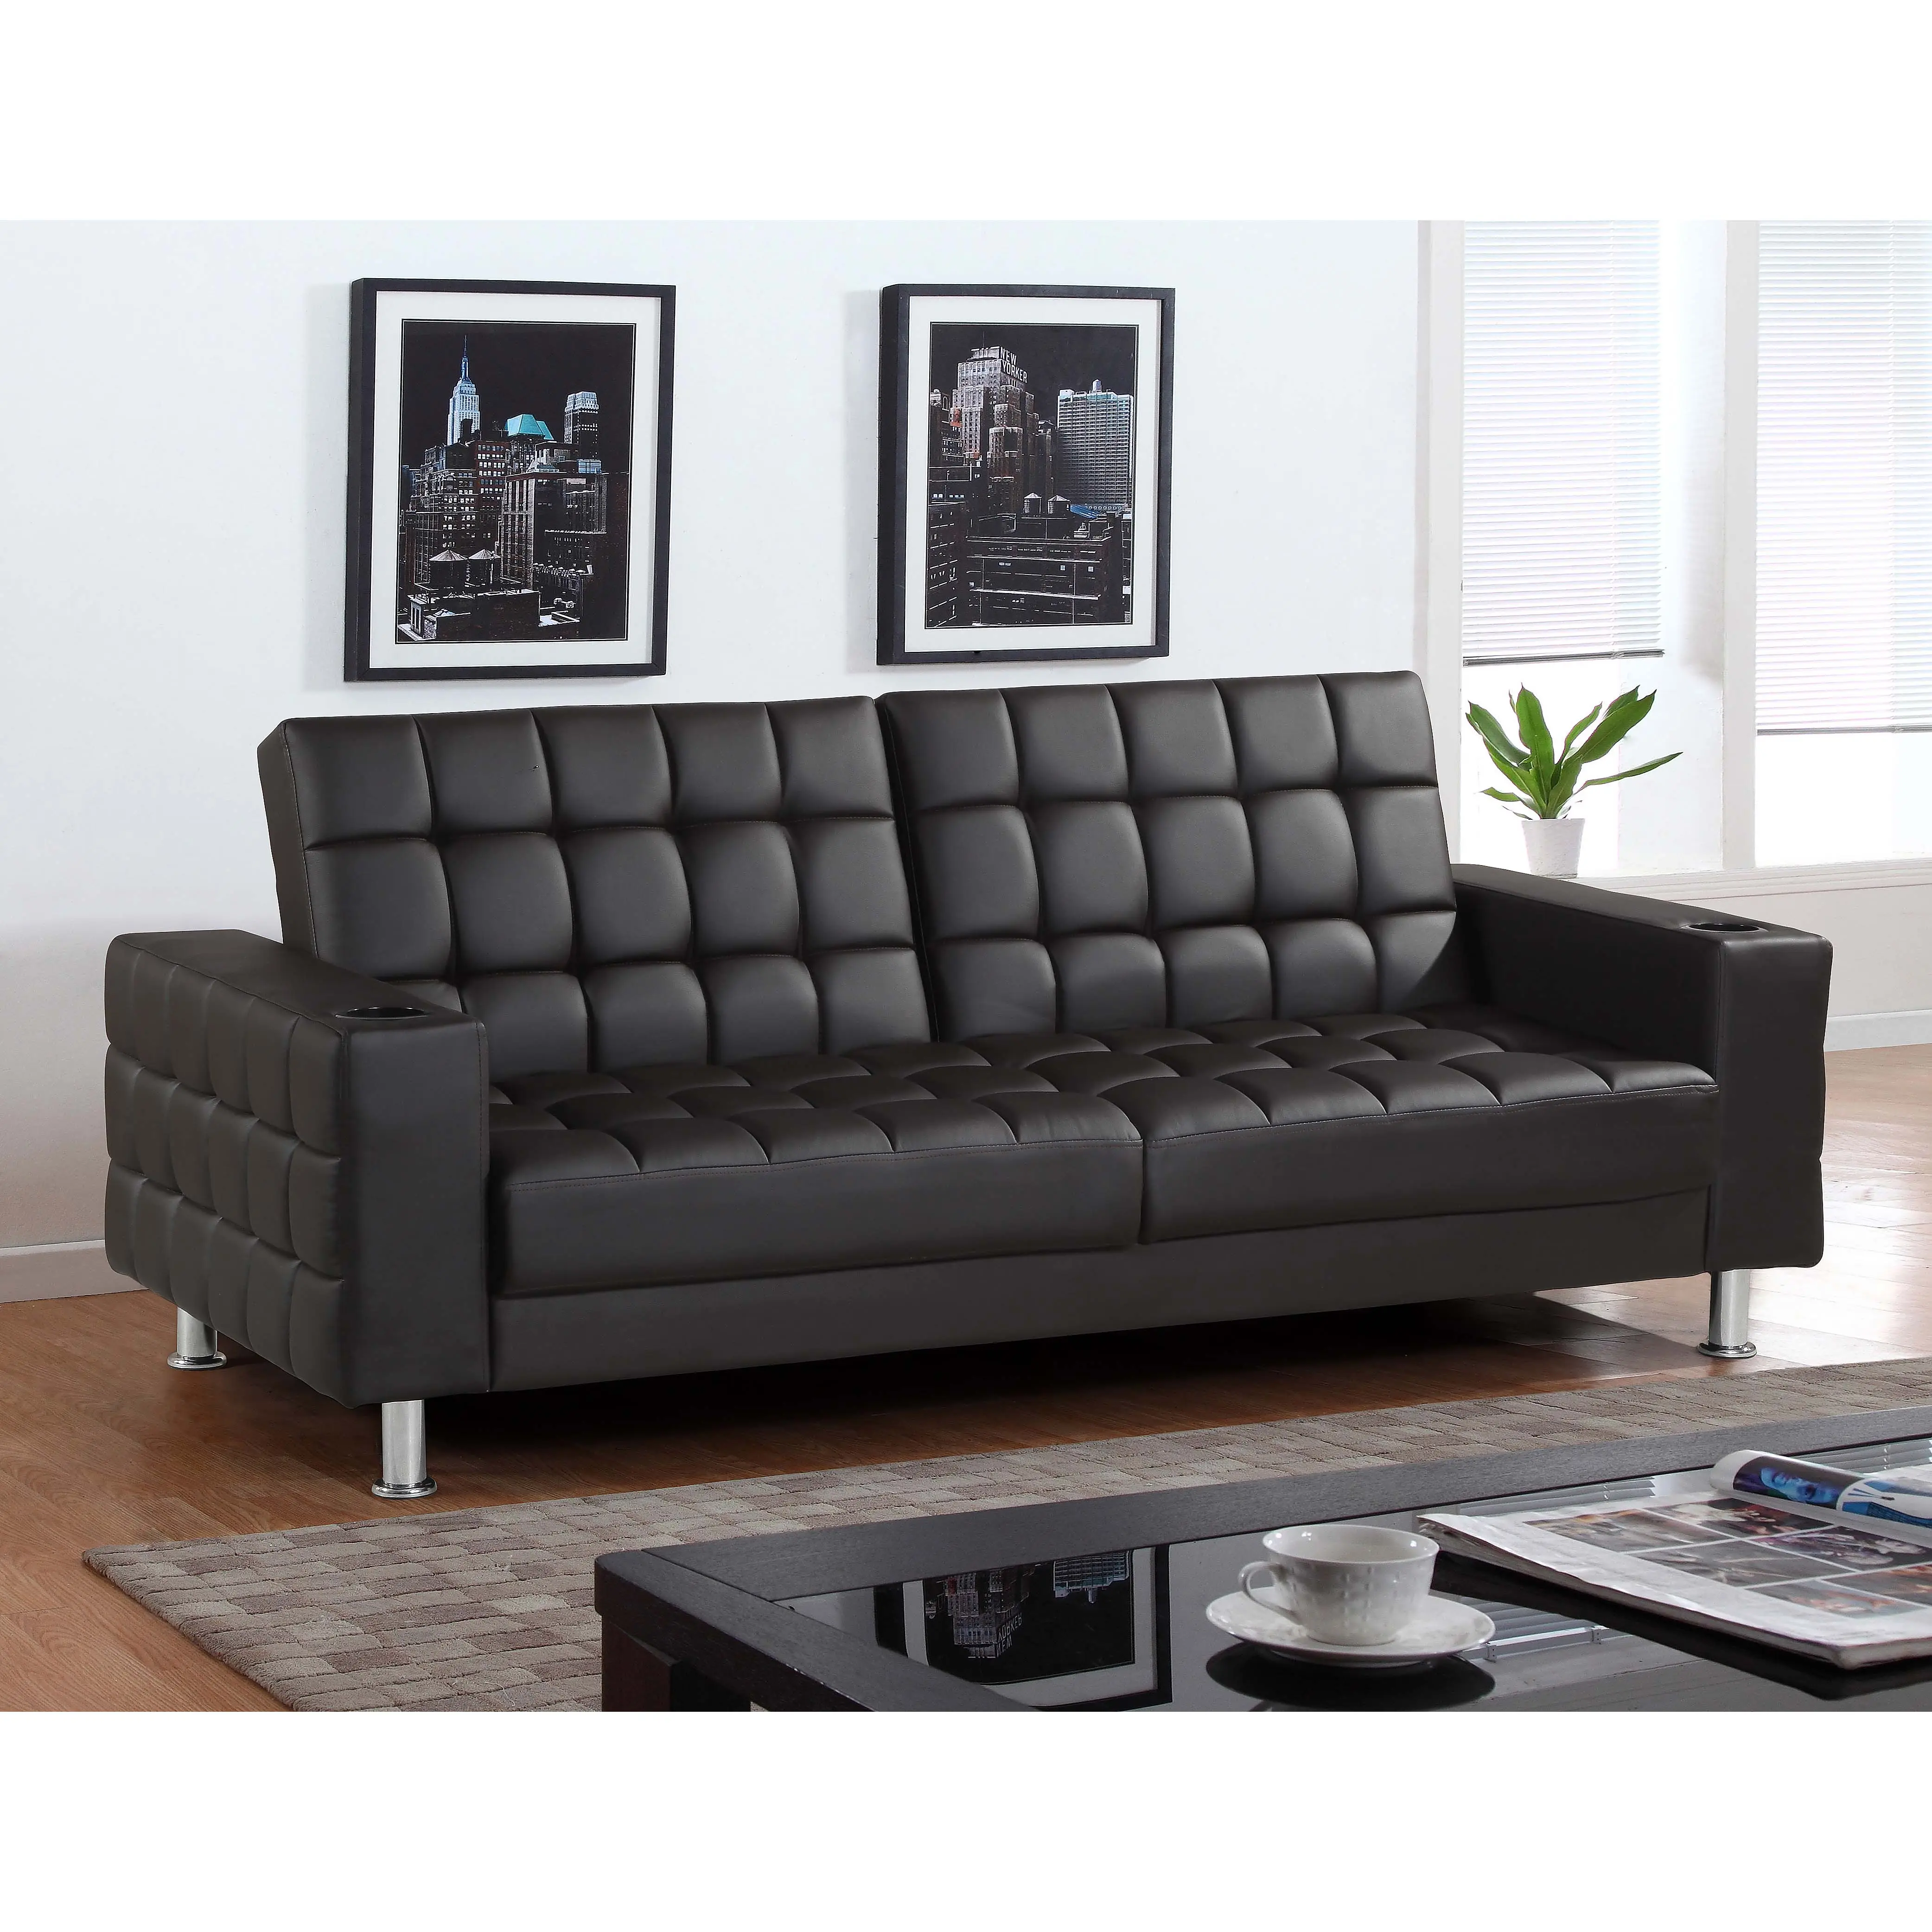 2020 neuestes Design Schwarze klappbare Leder couch mit Funktion des Sofas mit Bett